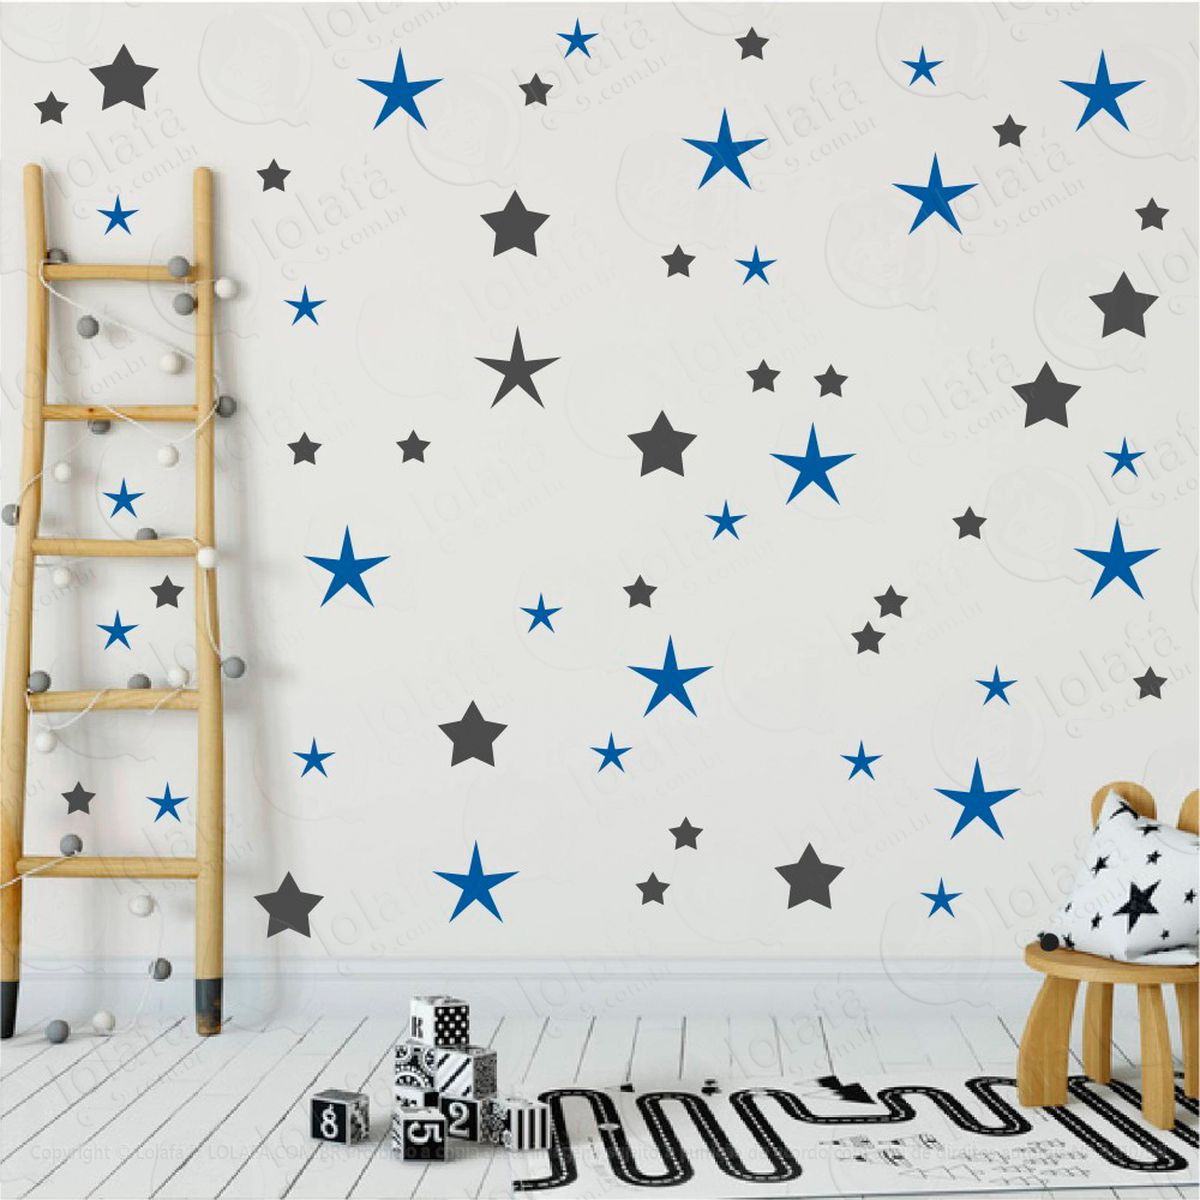 adesivos estrelas 90 peças adesivos para quarto de bebê infantil - mod:27